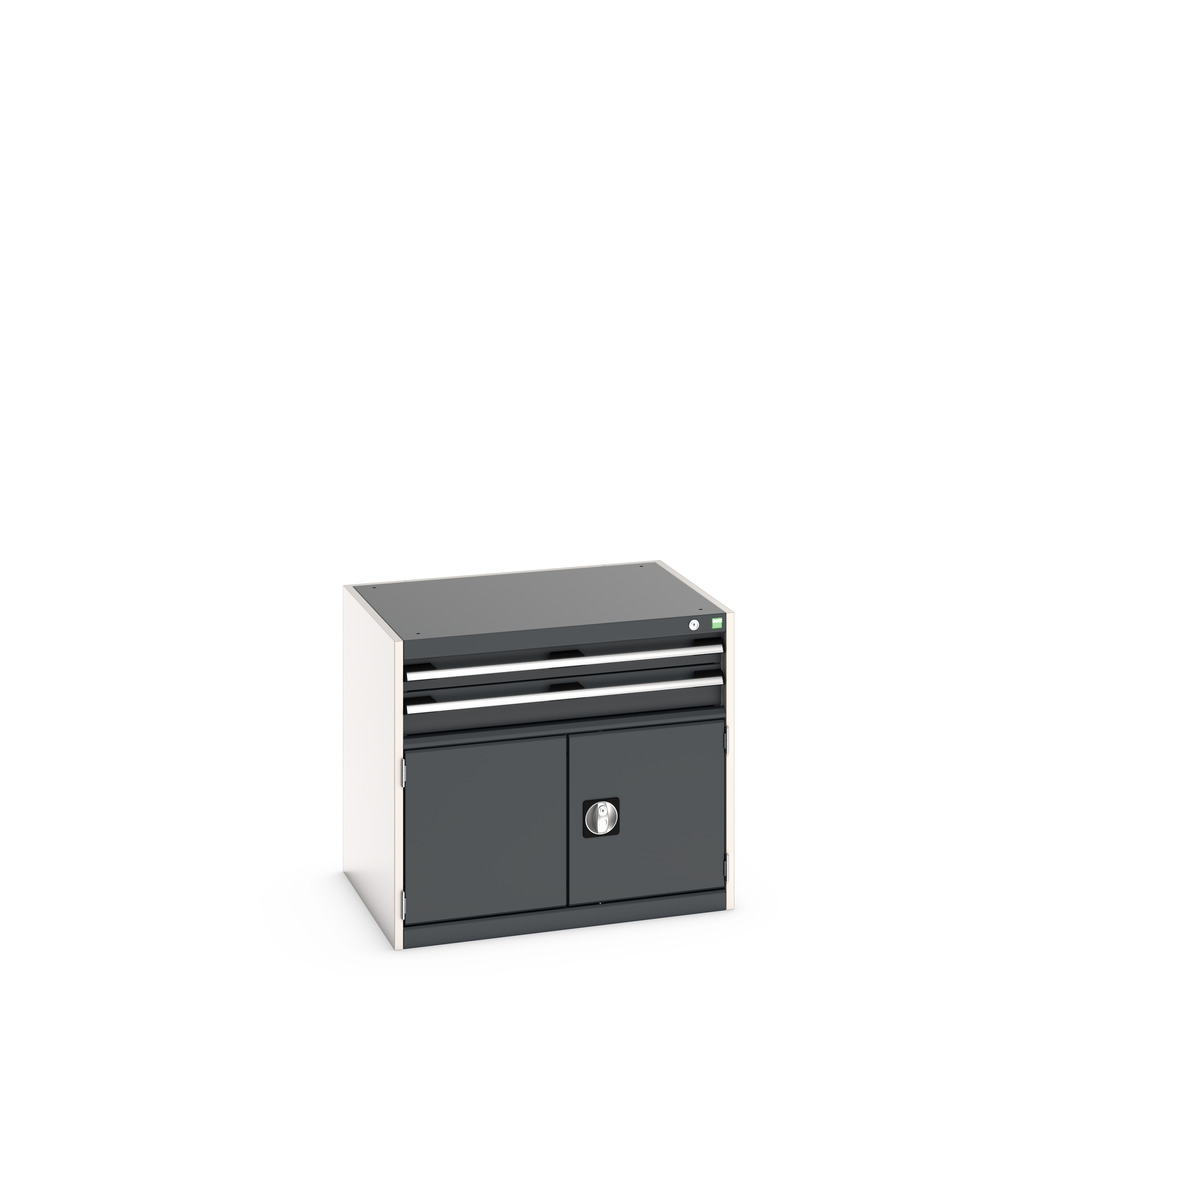 40020012. - cubio drawer-door cabinet